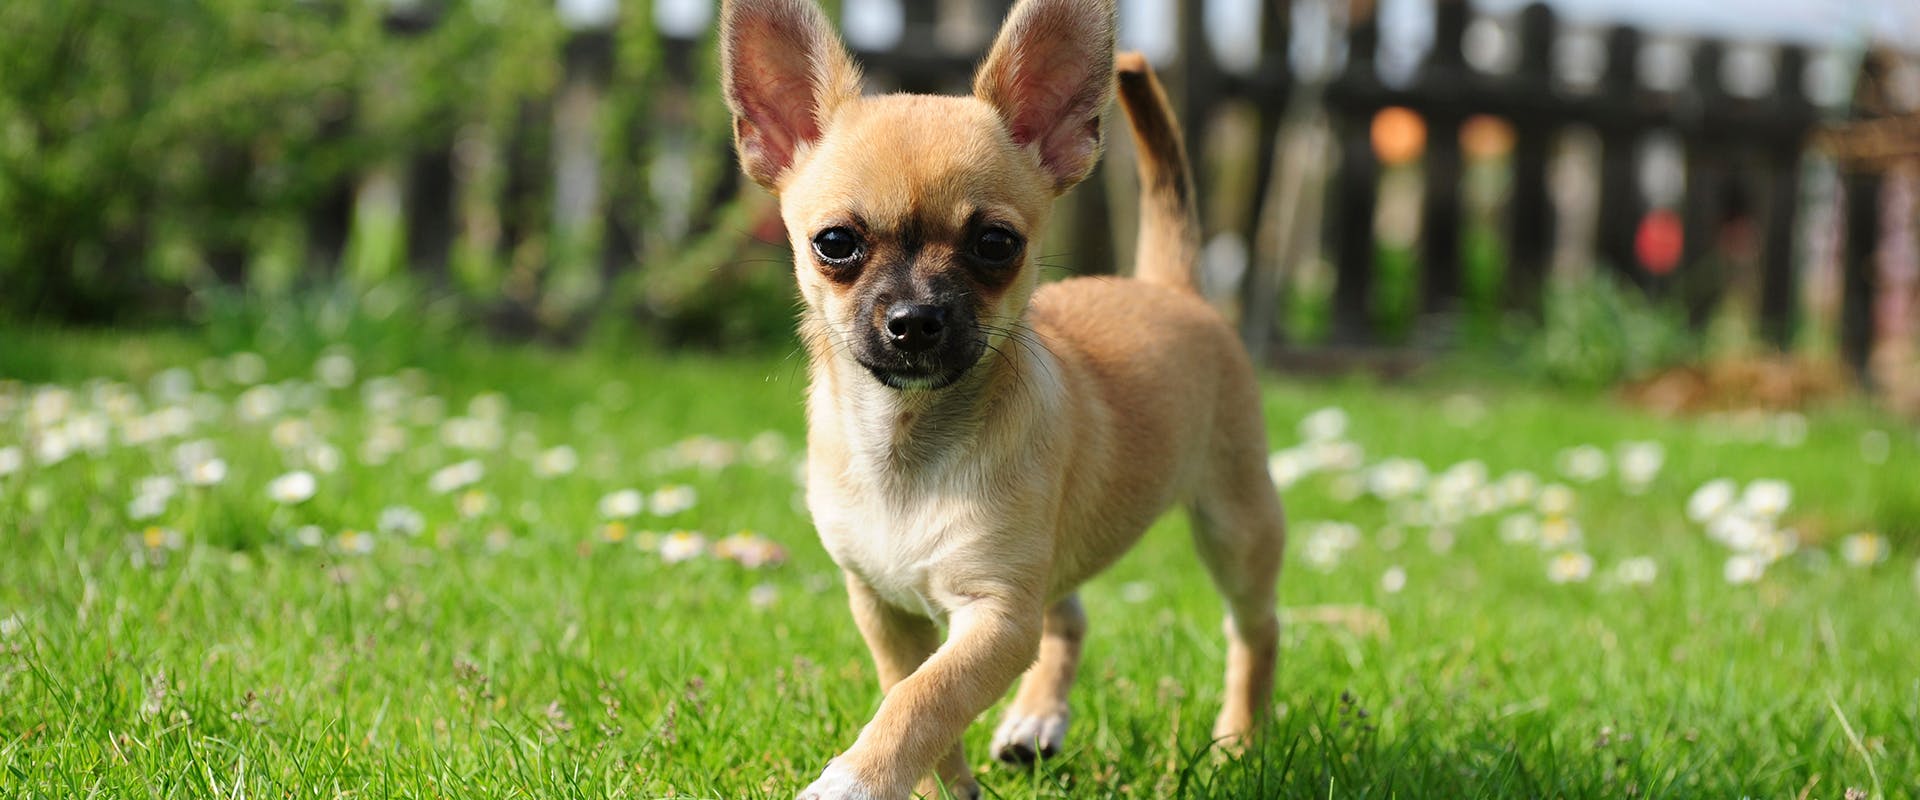 A sassy looking Chihuahua dog